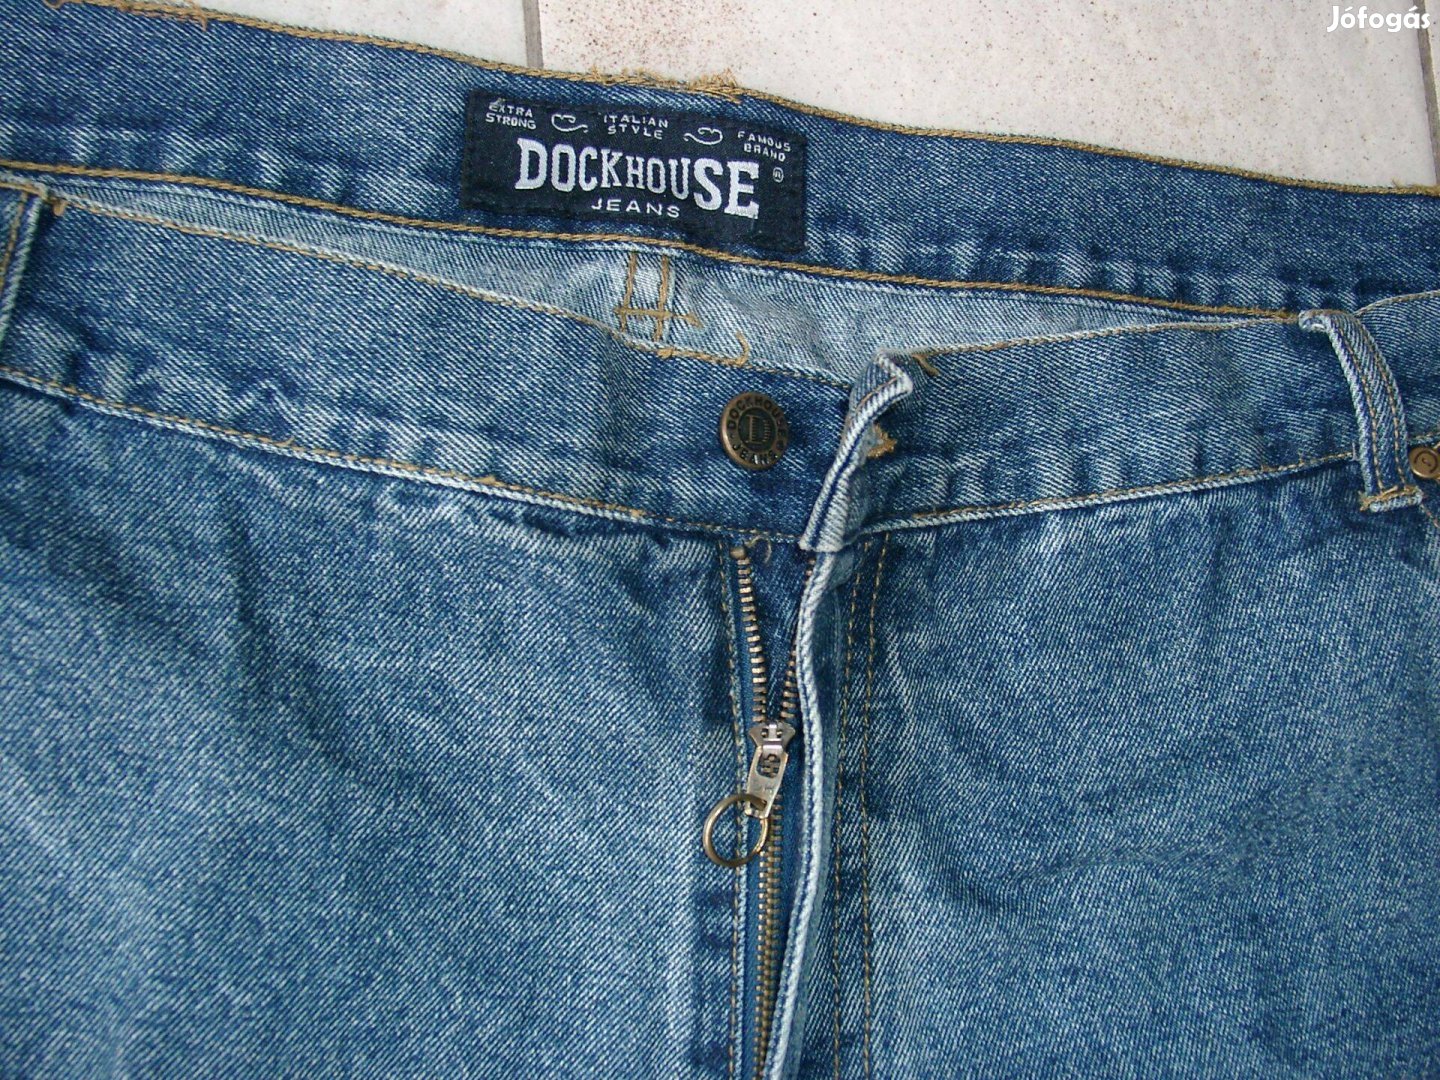 Férfi farmernadrág II, - Dockhouse Jeans